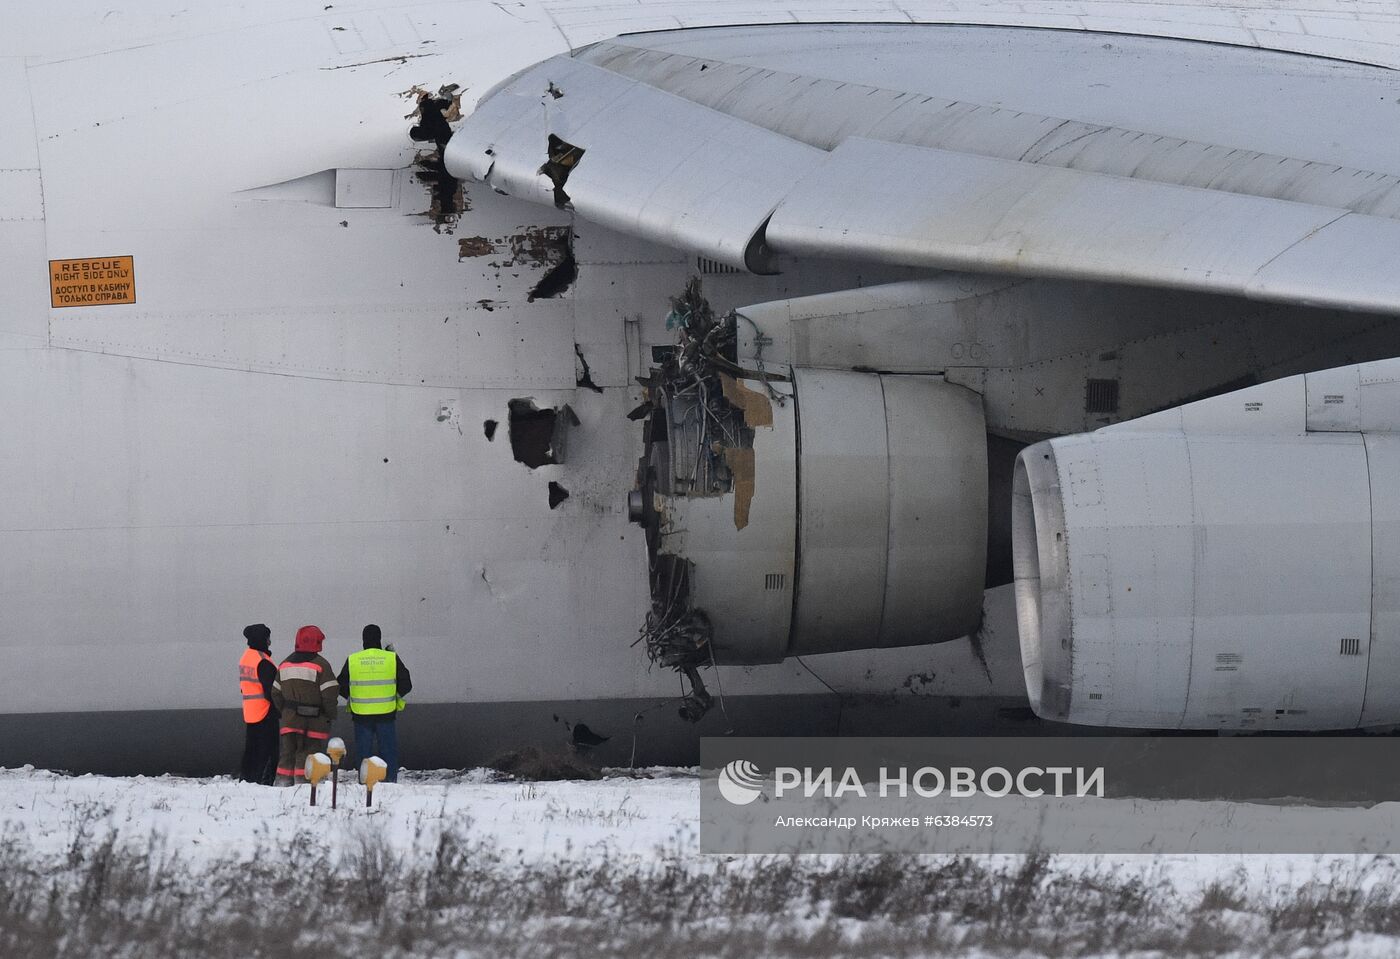 В Новосибирске из-за проблем с двигателем вынужденно сел Ан-124